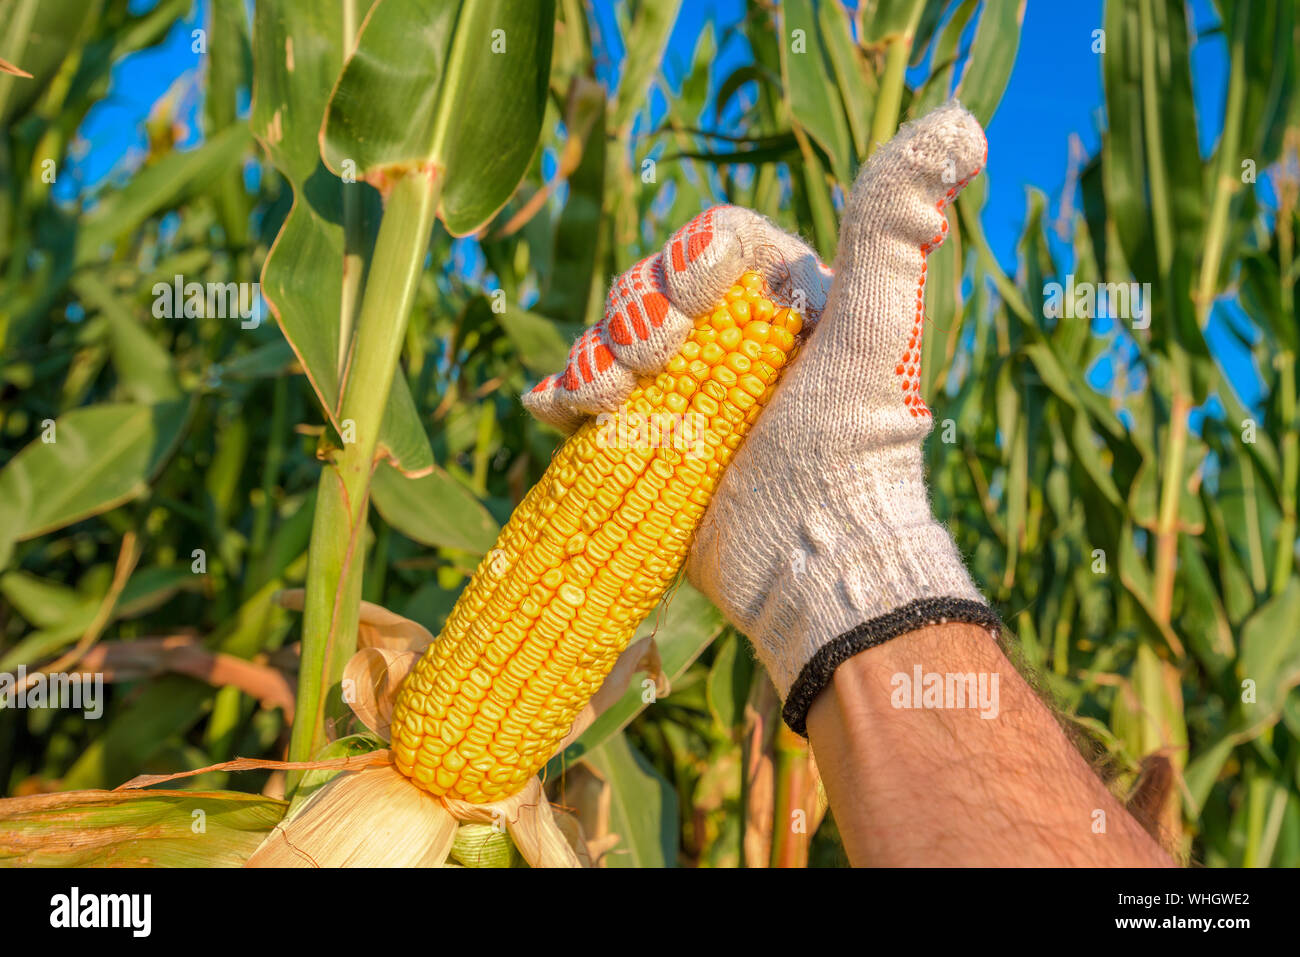 Agricoltore raccolta a mano mature sulla pannocchia di mais in campo coltivato durante la stagione di raccolta Foto Stock